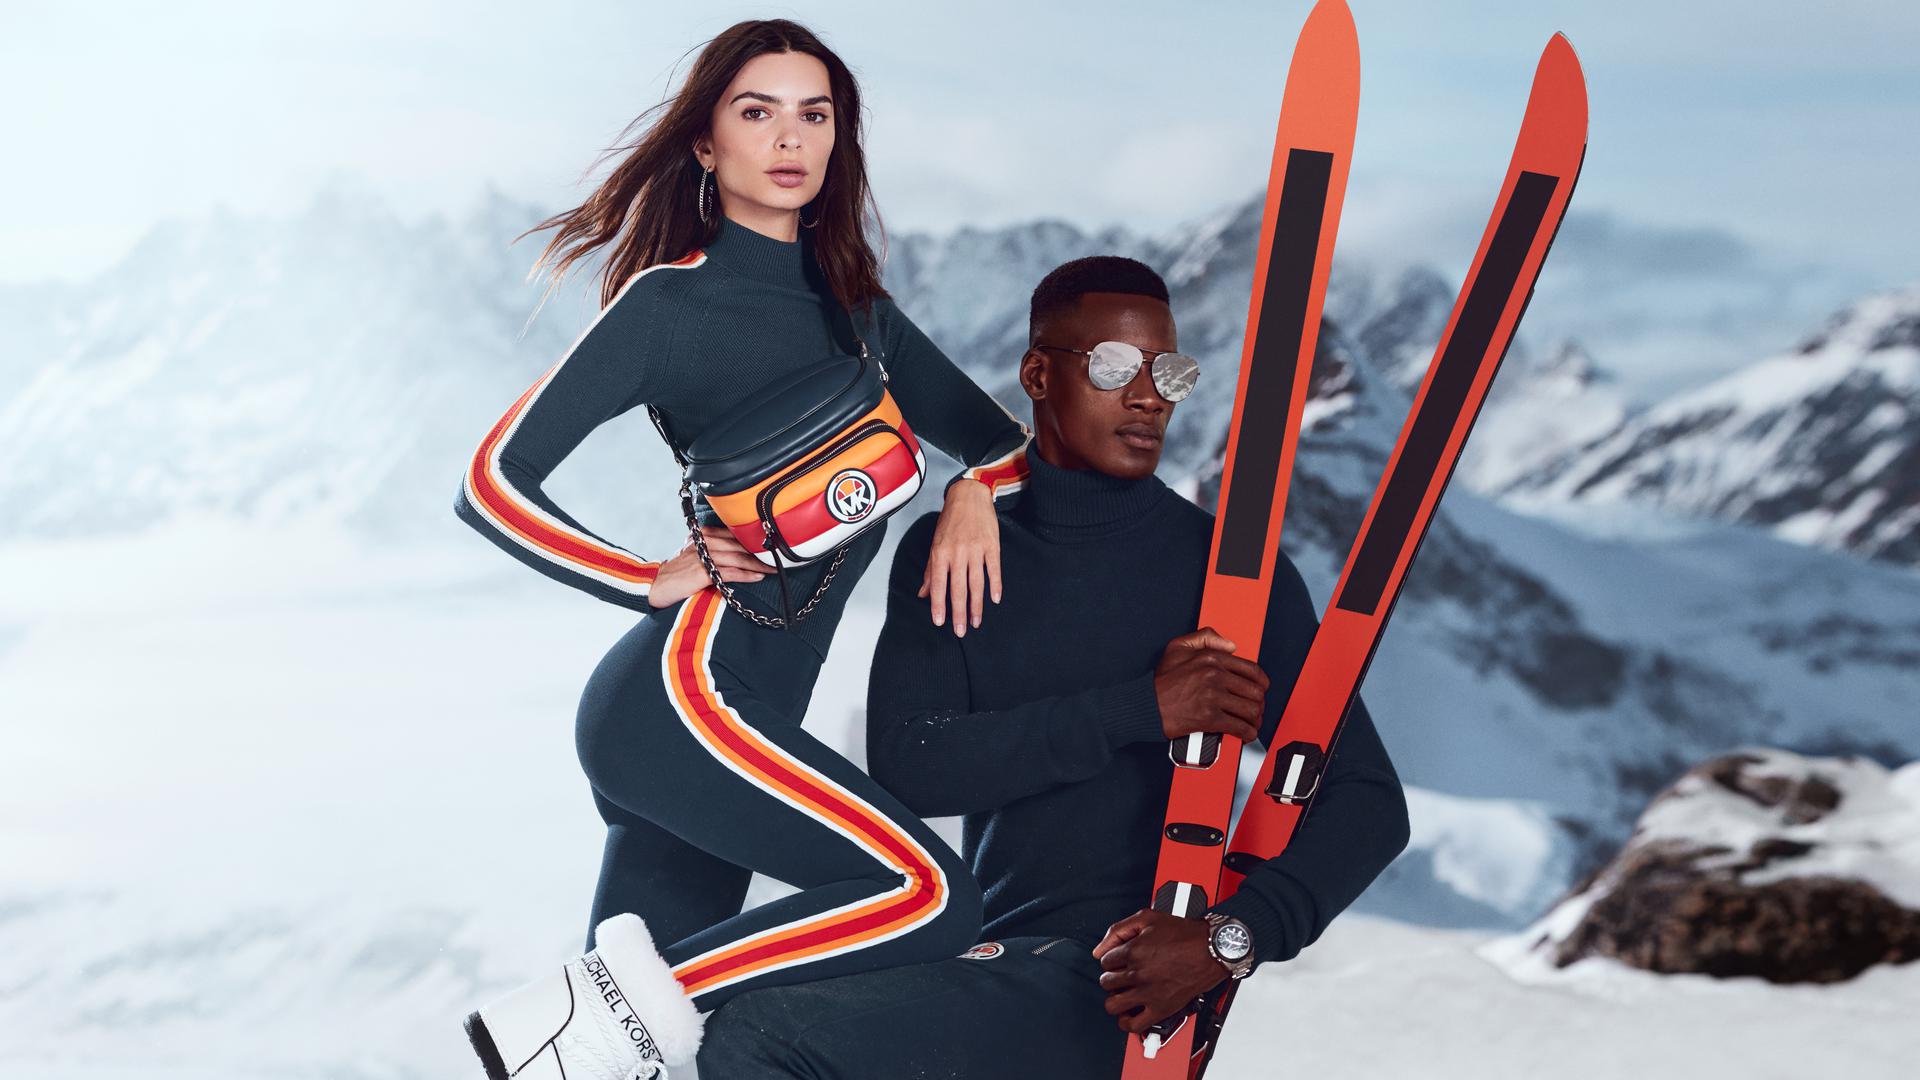 Michael Kors y Ellesse lanzan su colección de esquí